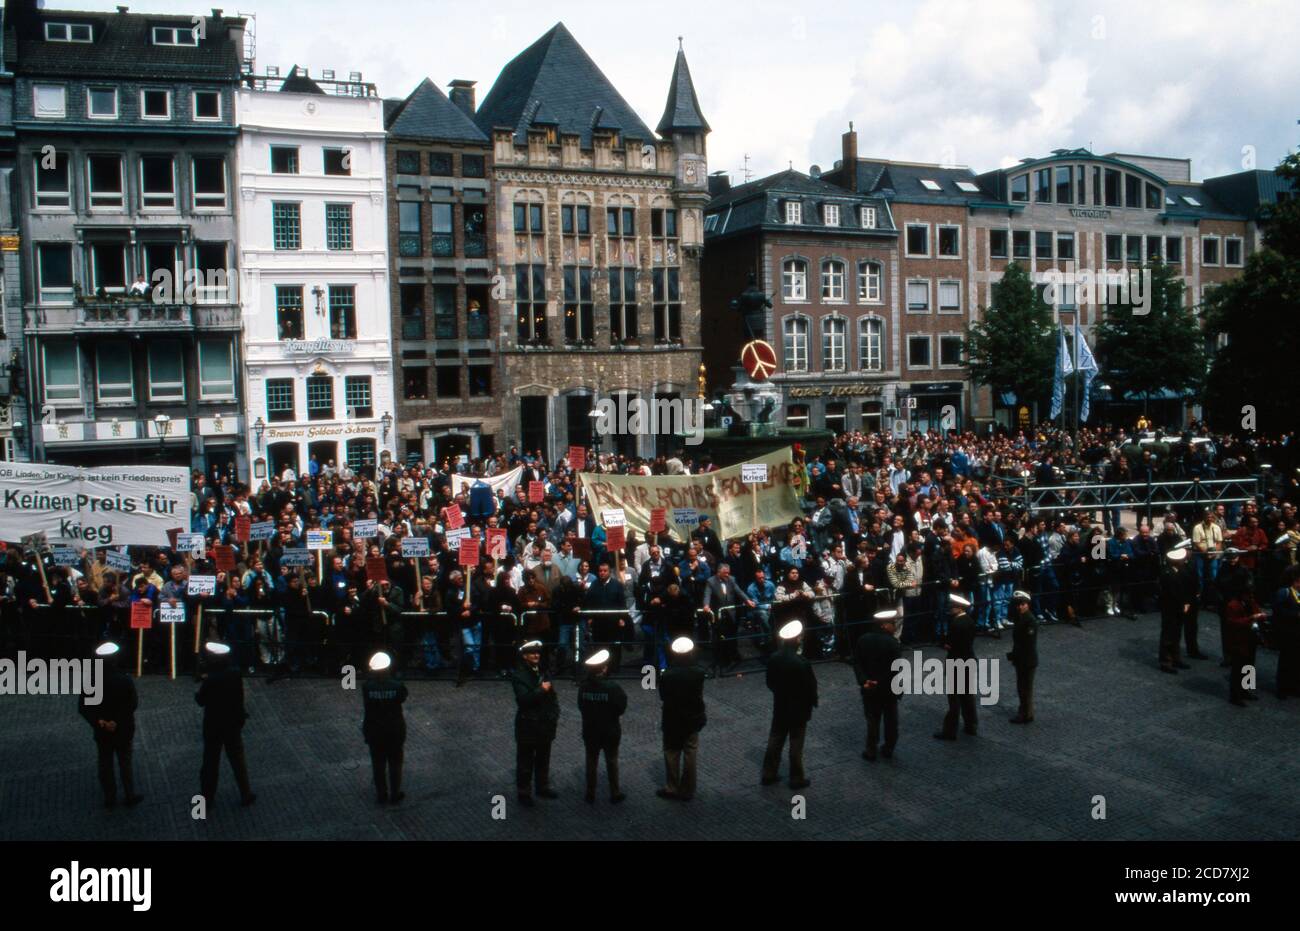 Protestkundgebung vor dem Rathaus anläßlich der Verleihung des Karlspreises der Stadt Aachen an Tony Blair am 13. Maggio 1999. Foto Stock